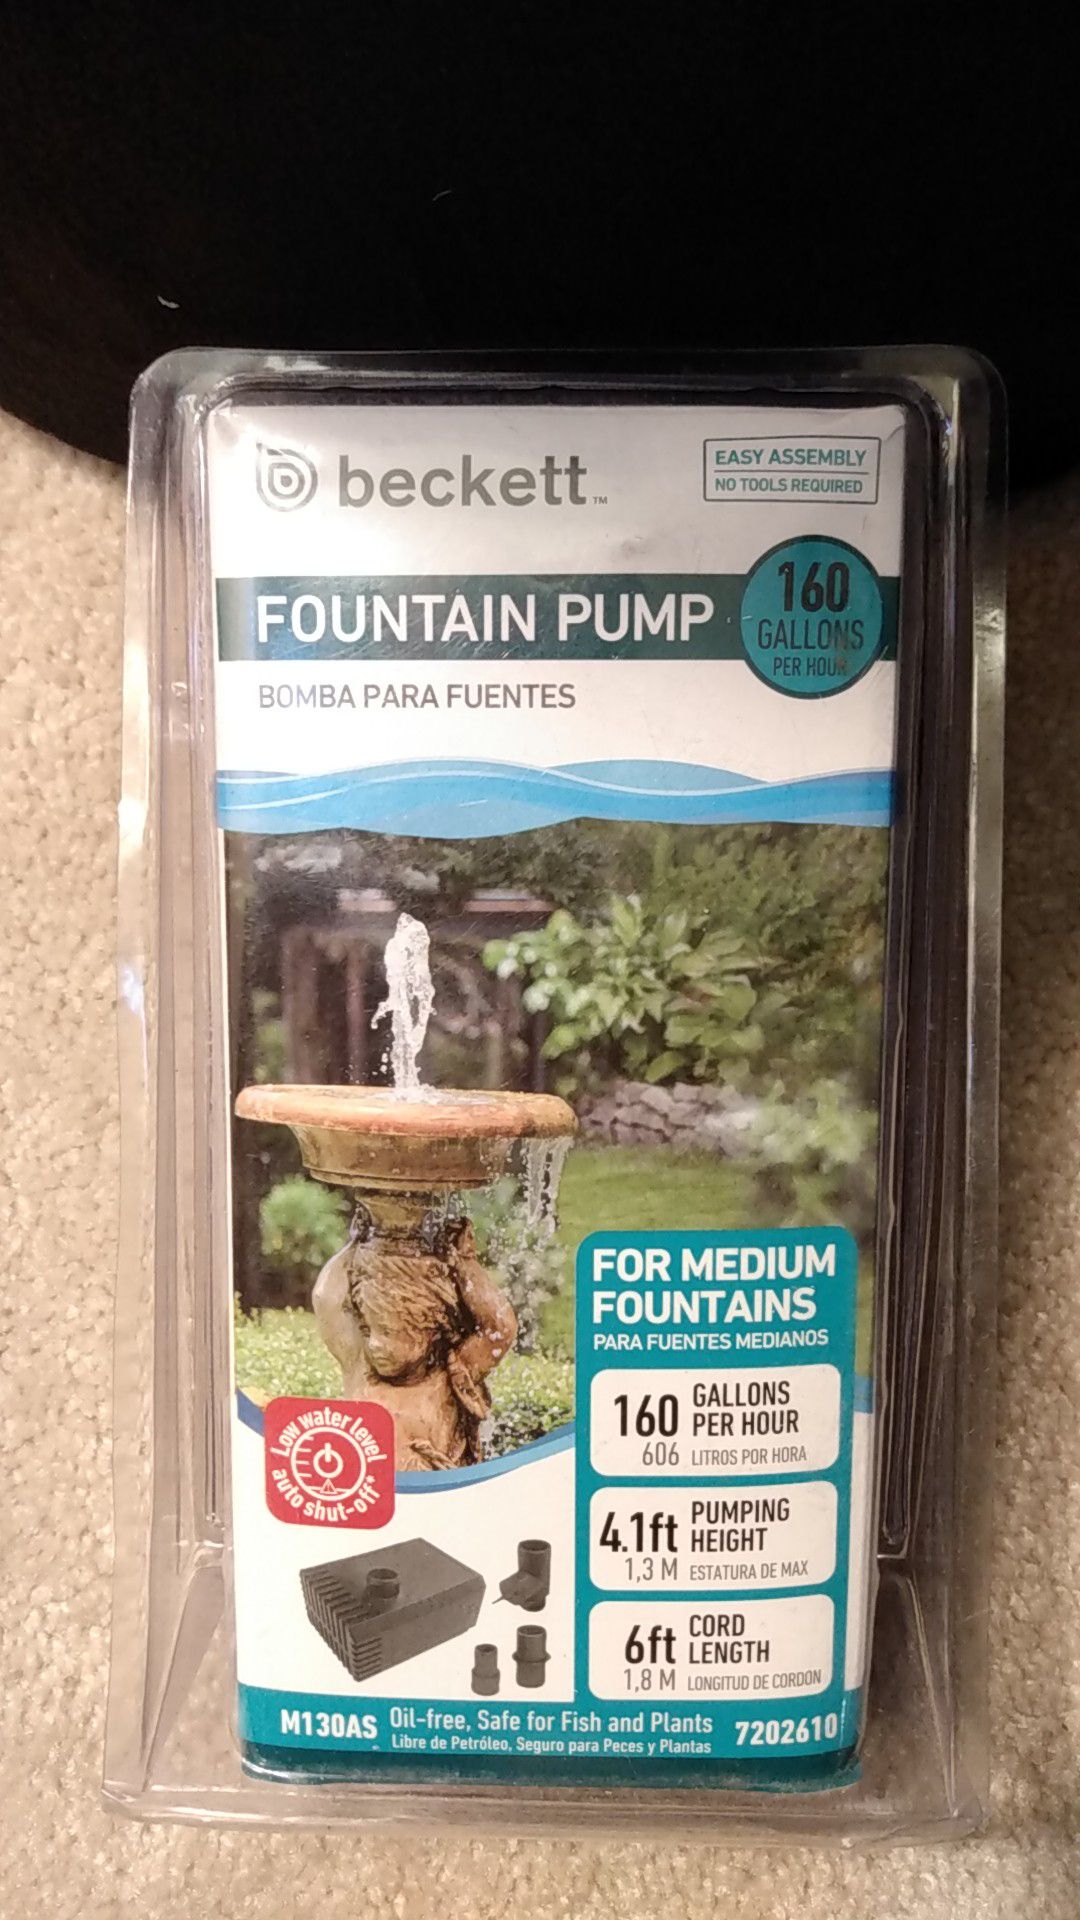 Fountain pump